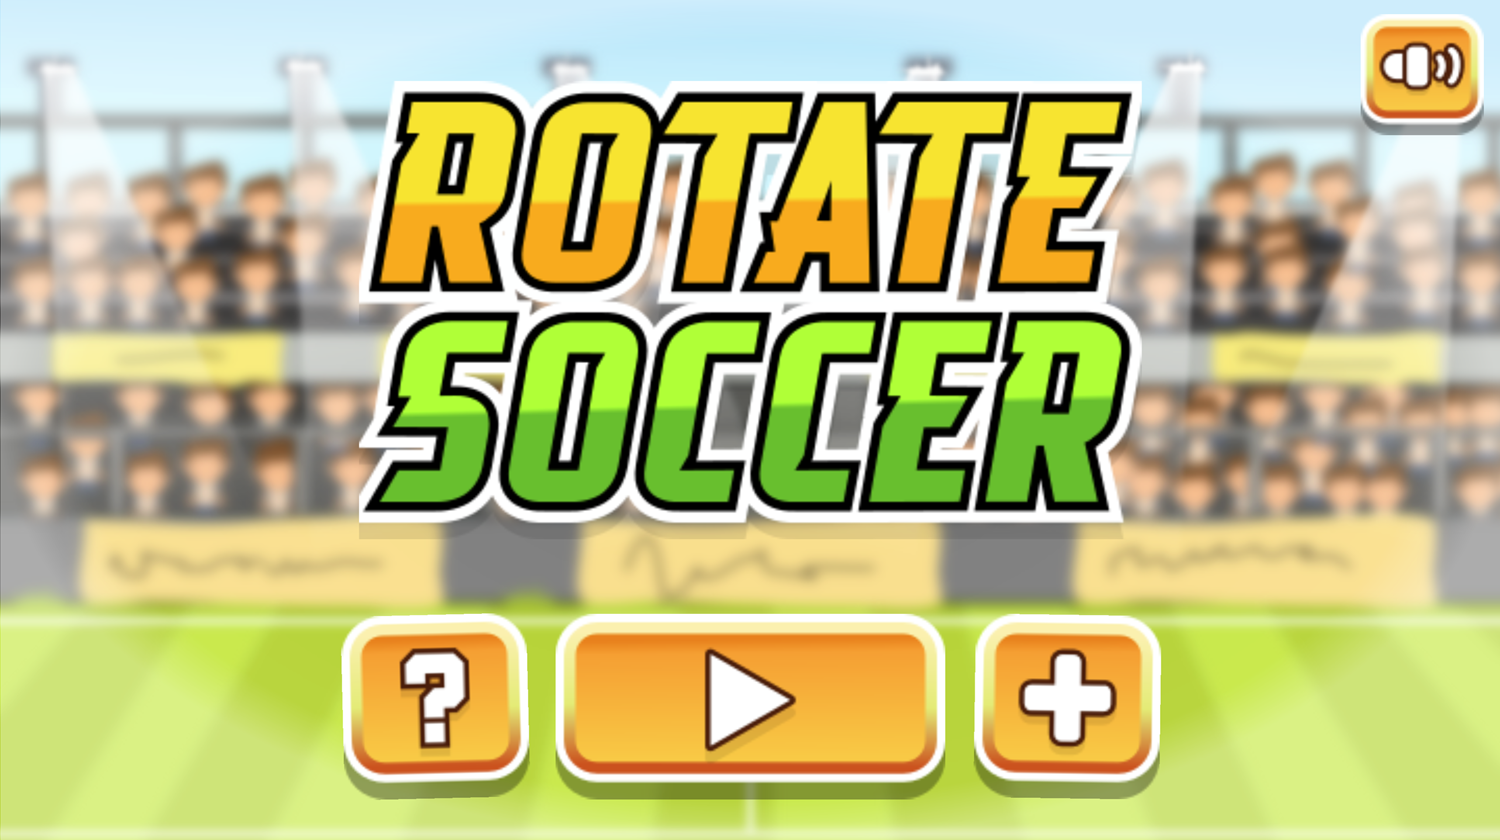 Rotate Soccer Game Welcome Screen Screenshot.